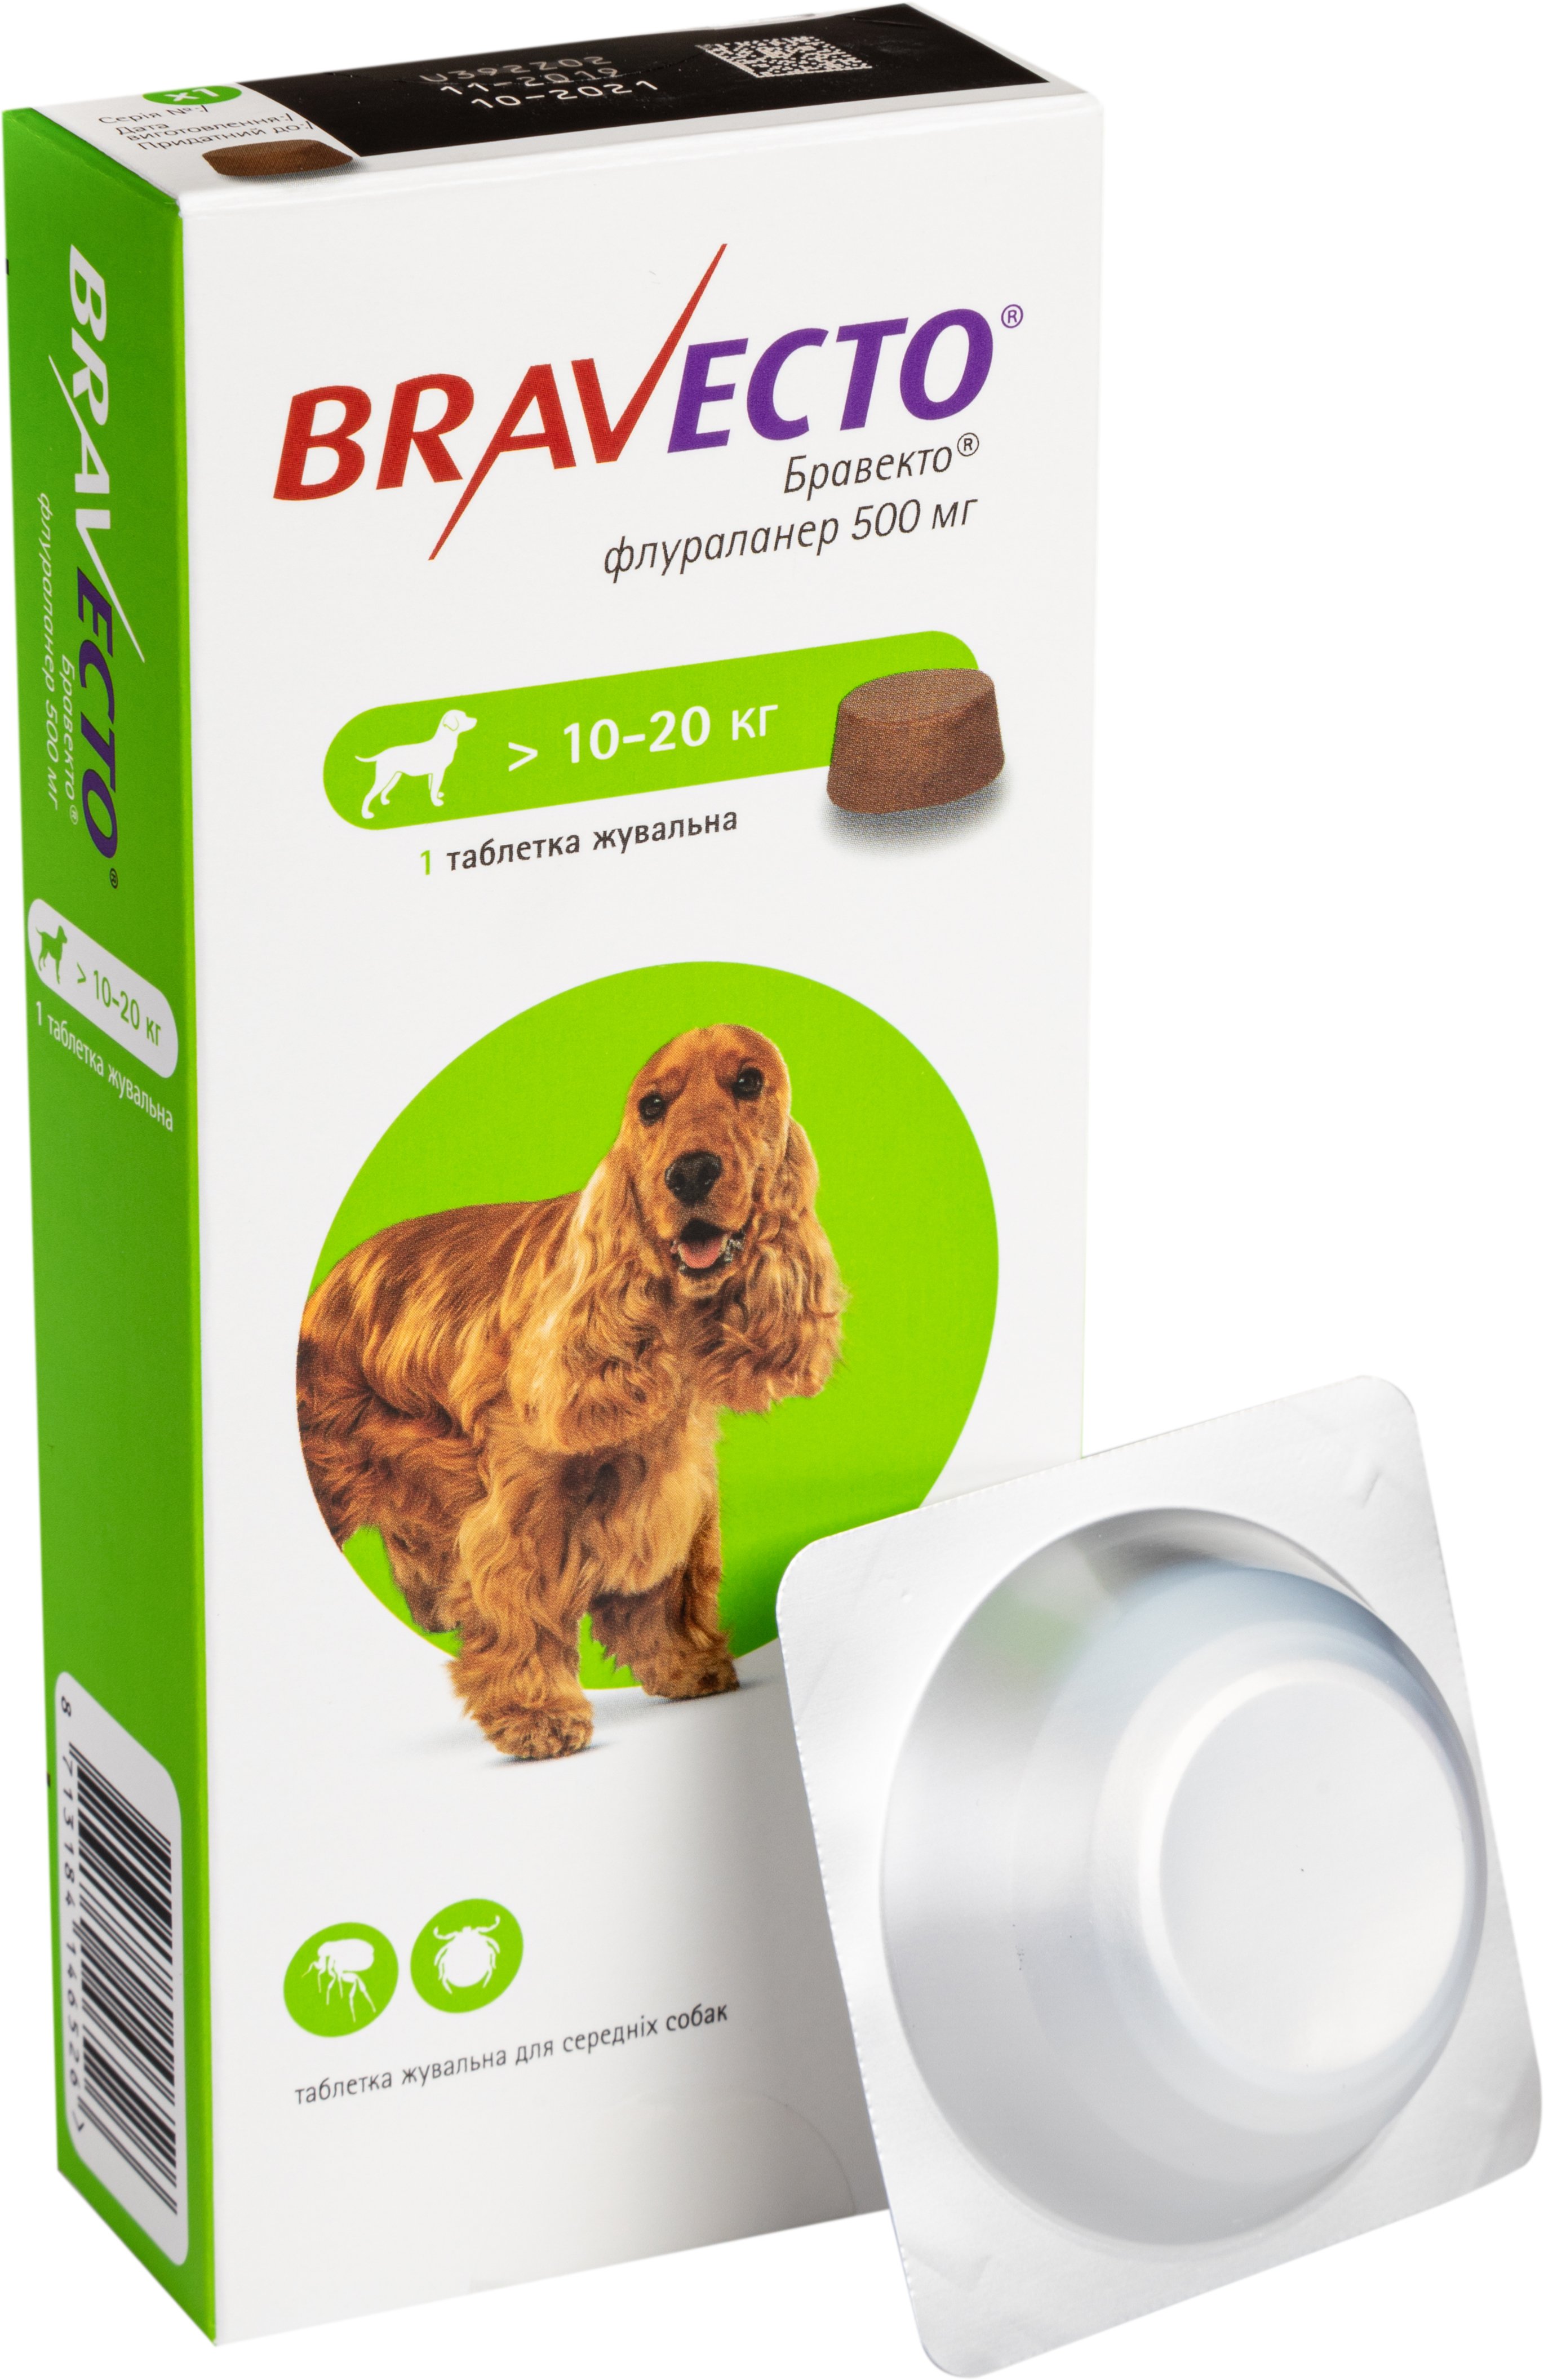 Жевательная таблетка Bravecto, для собак массой от 10 до 20 кг 1 шт. - фото 1